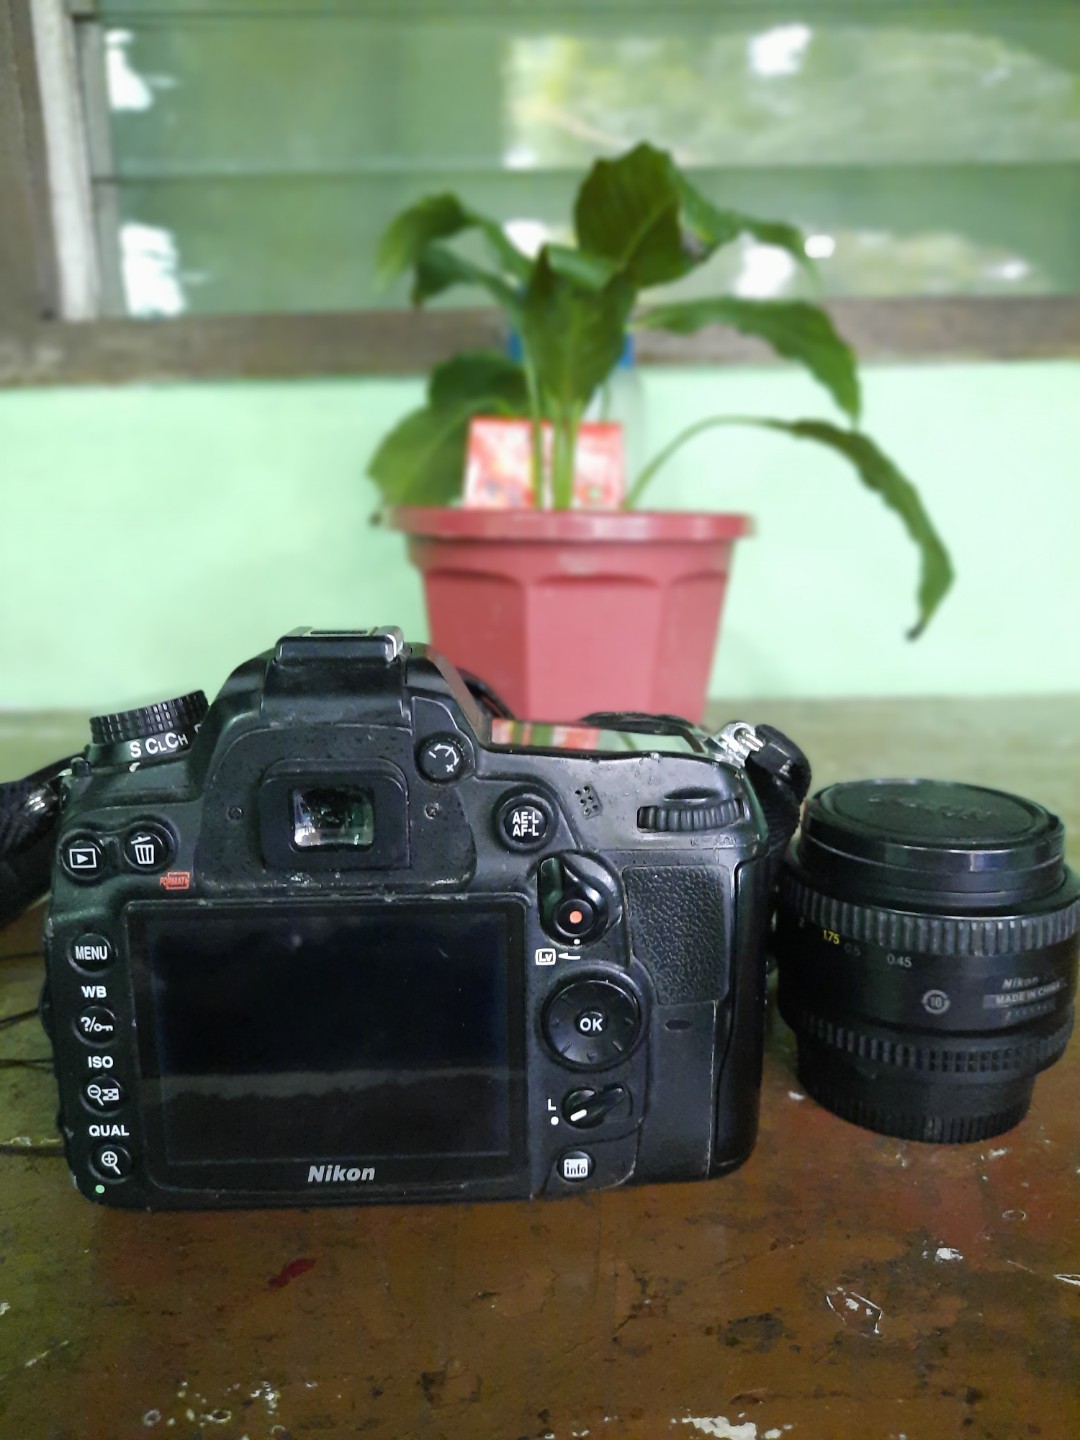 Nikon D7000 with 18-105mm lens and 50mm 1.8D lens AF